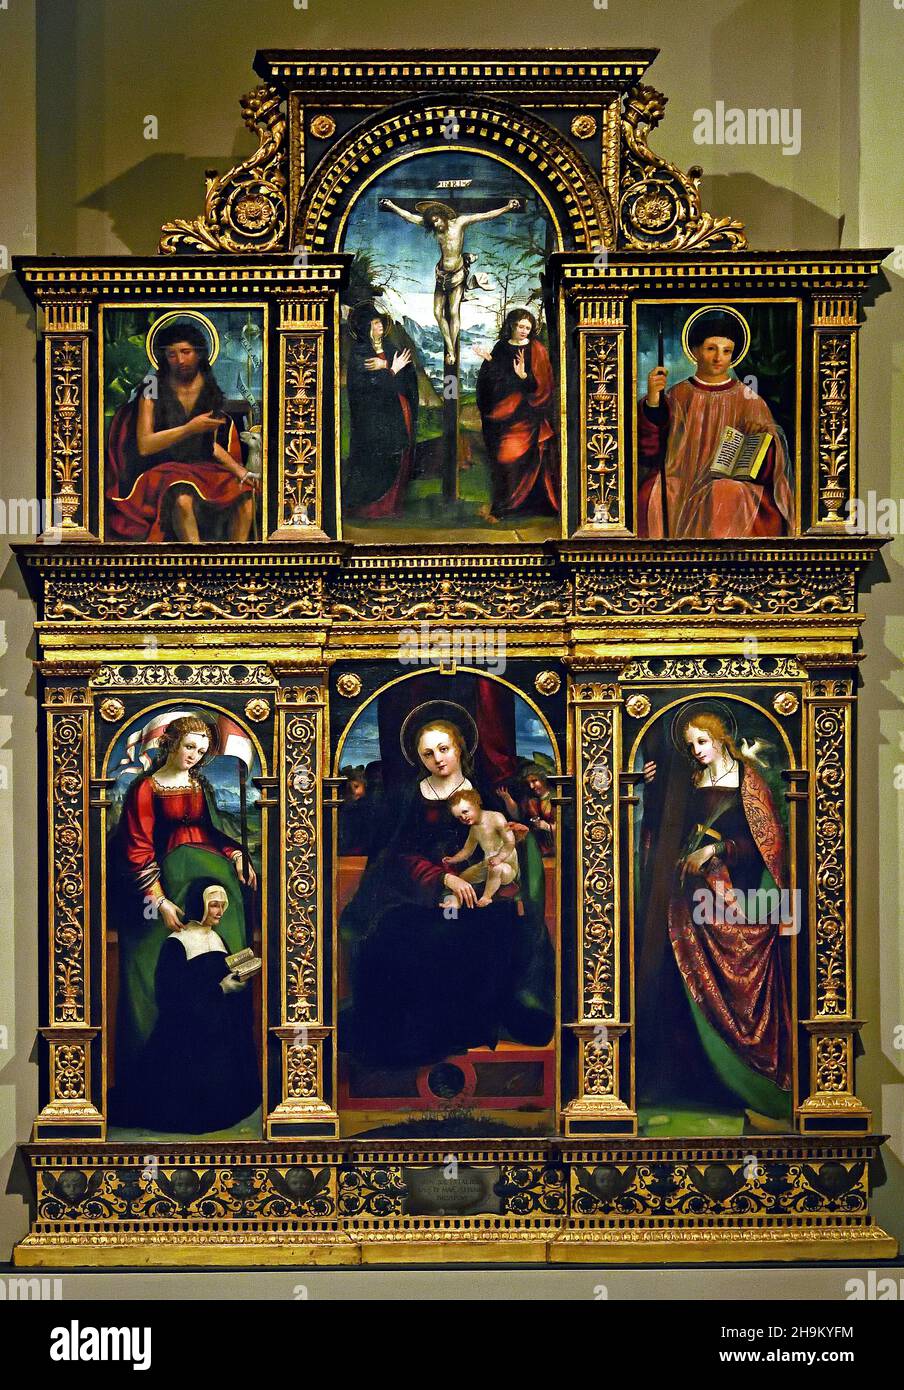 Pietro Grammorseo (1521-31) und Gandolfo da Roreto ( 1493-1518) - Polyptychon mit der Madonna und dem Kind, der Kreuzigung und Heiligen mit Spender,1525 Italien Italienisch. Stockfoto